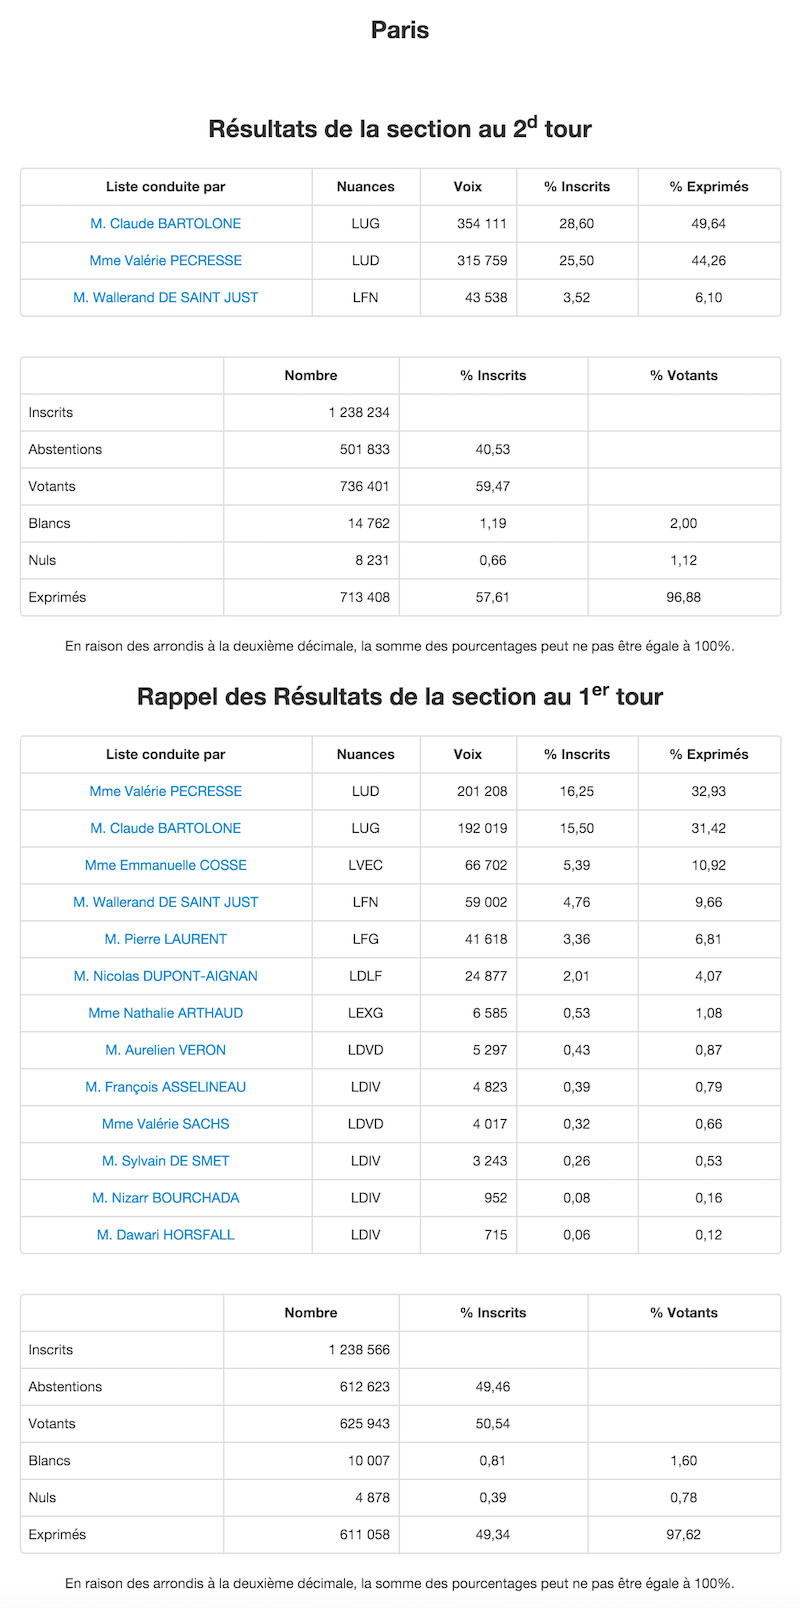 Régionales 2015 et 2010 dans le 14e arrondissement de Paris